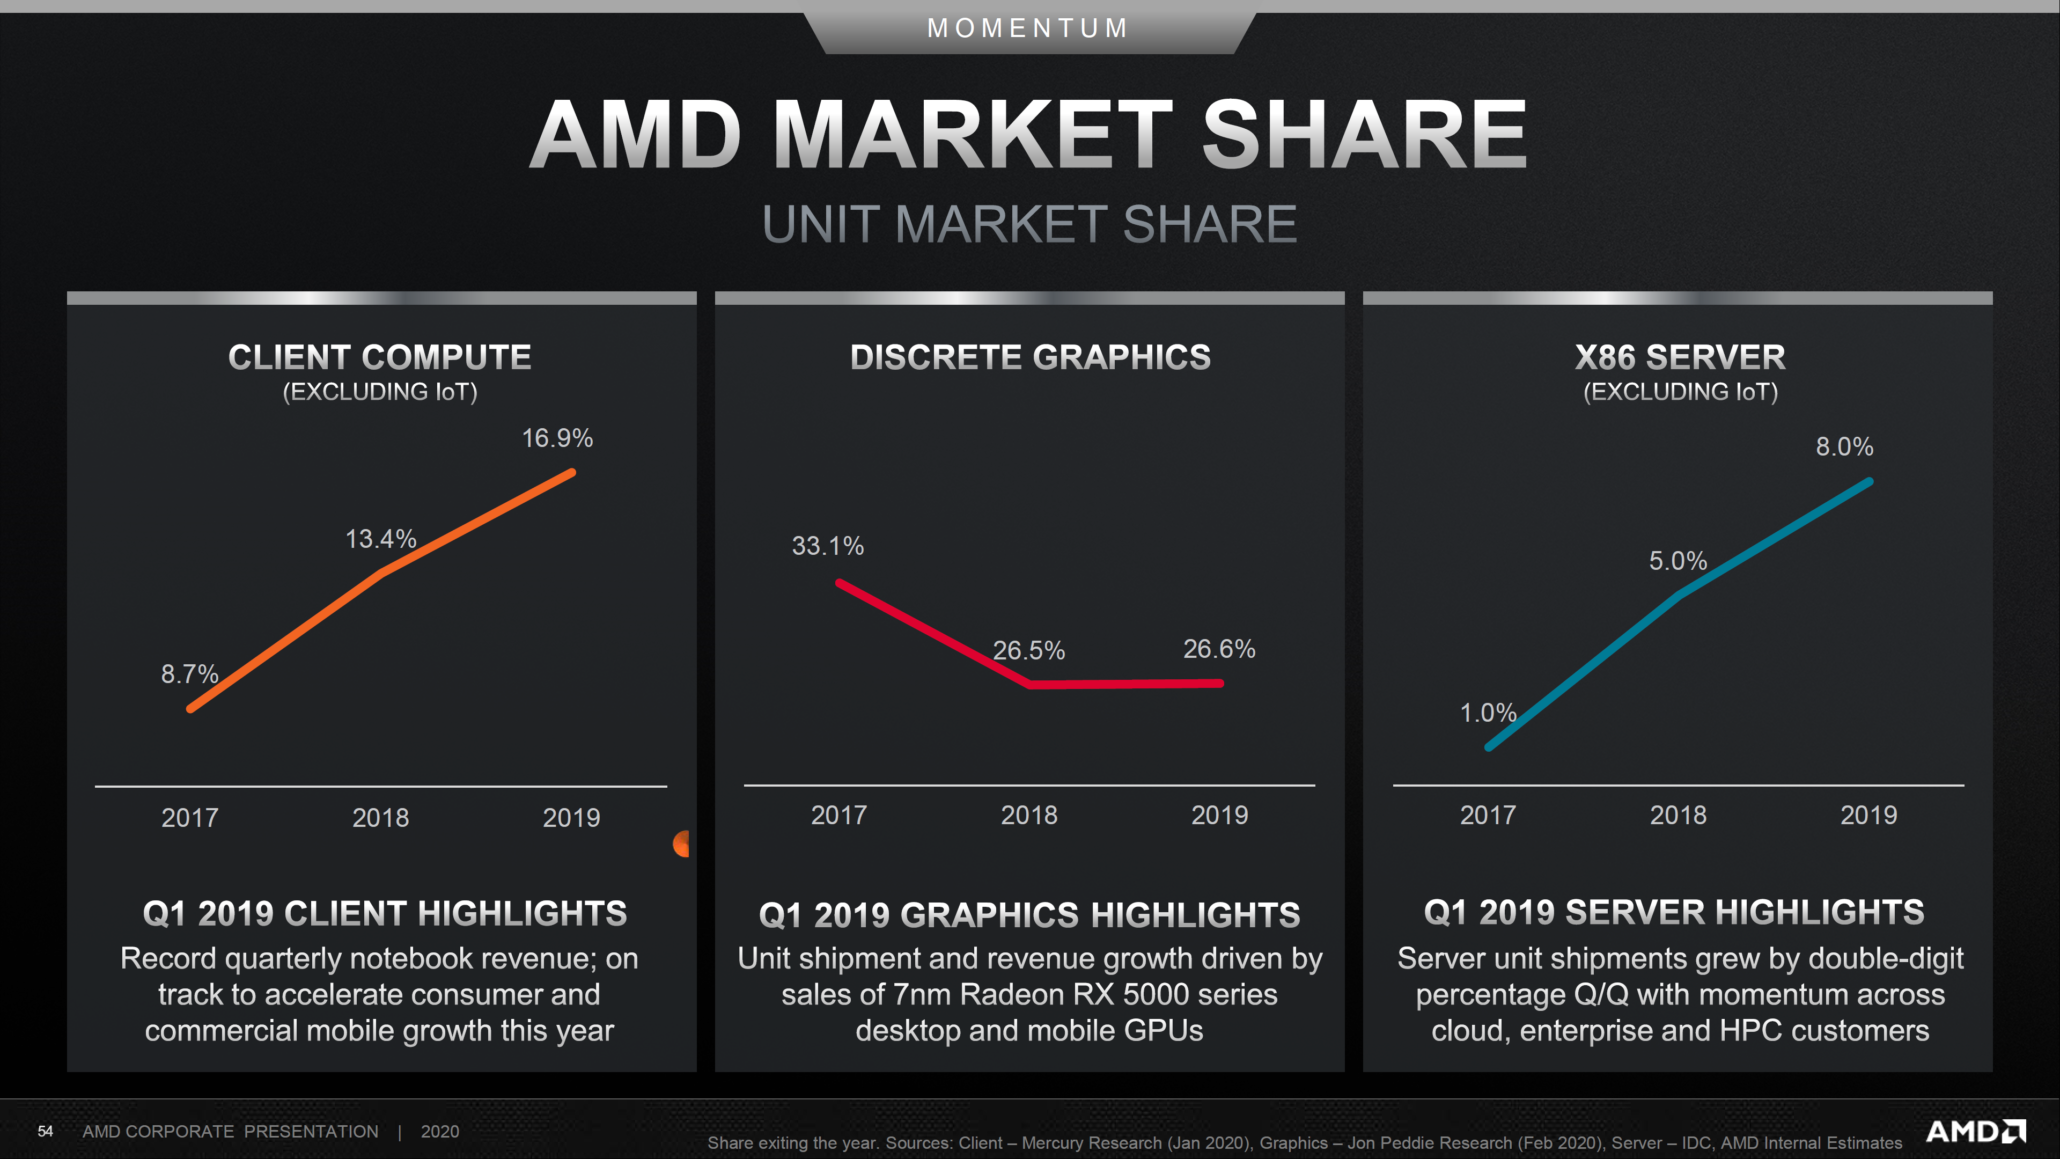 AMD-CPU-GPU-Market-Share-2019-2020_1-2060x1159.png